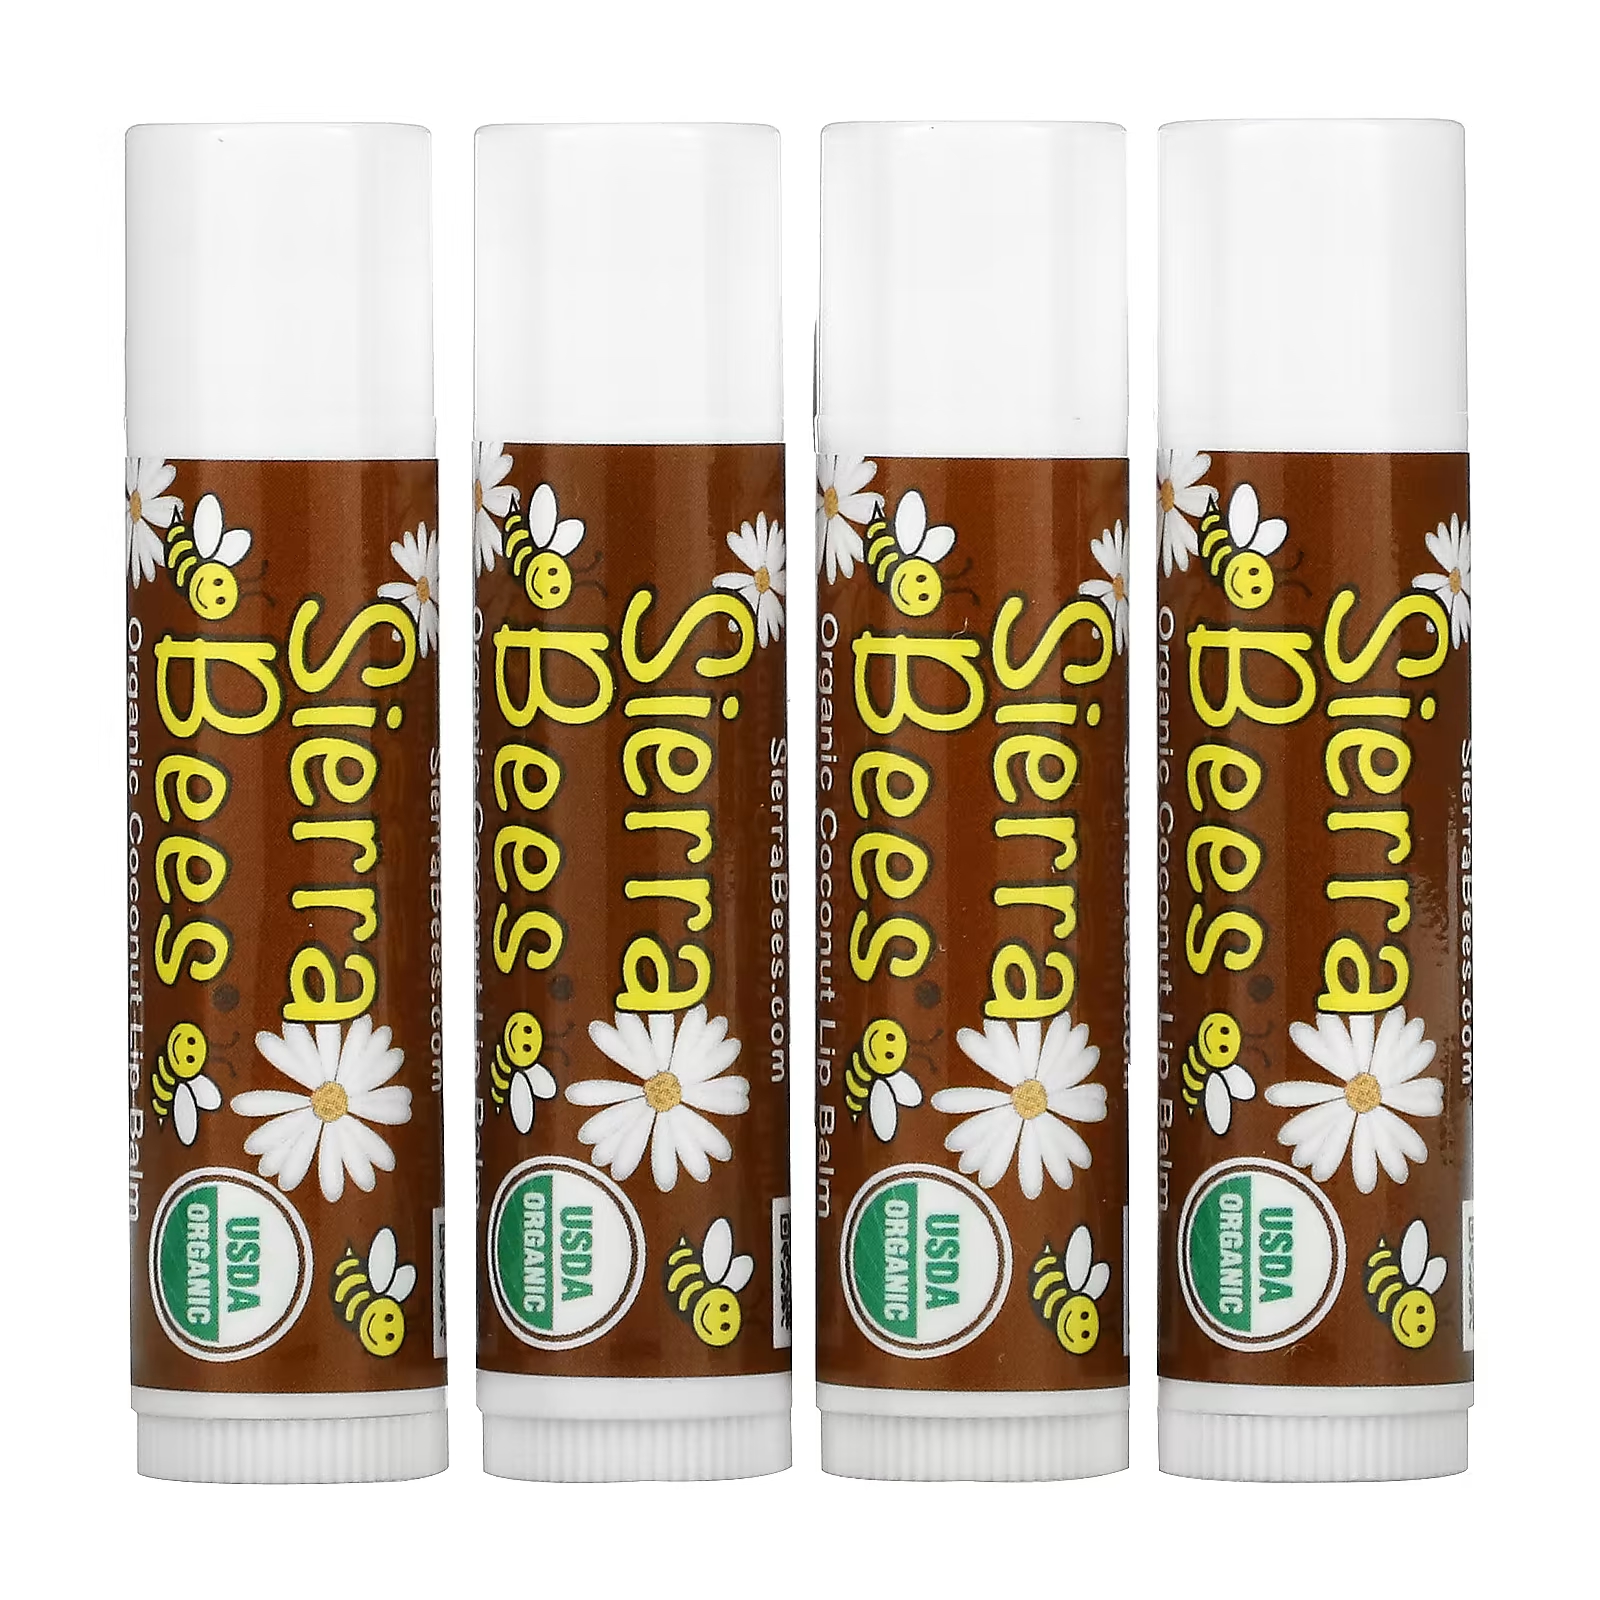 Органические бальзамы для губ Sierra Bees кокос, 4 упаковки по 4,25 г sierra bees органические бальзамы для губ гранат 4 штуки по 4 25 г 0 15 унции